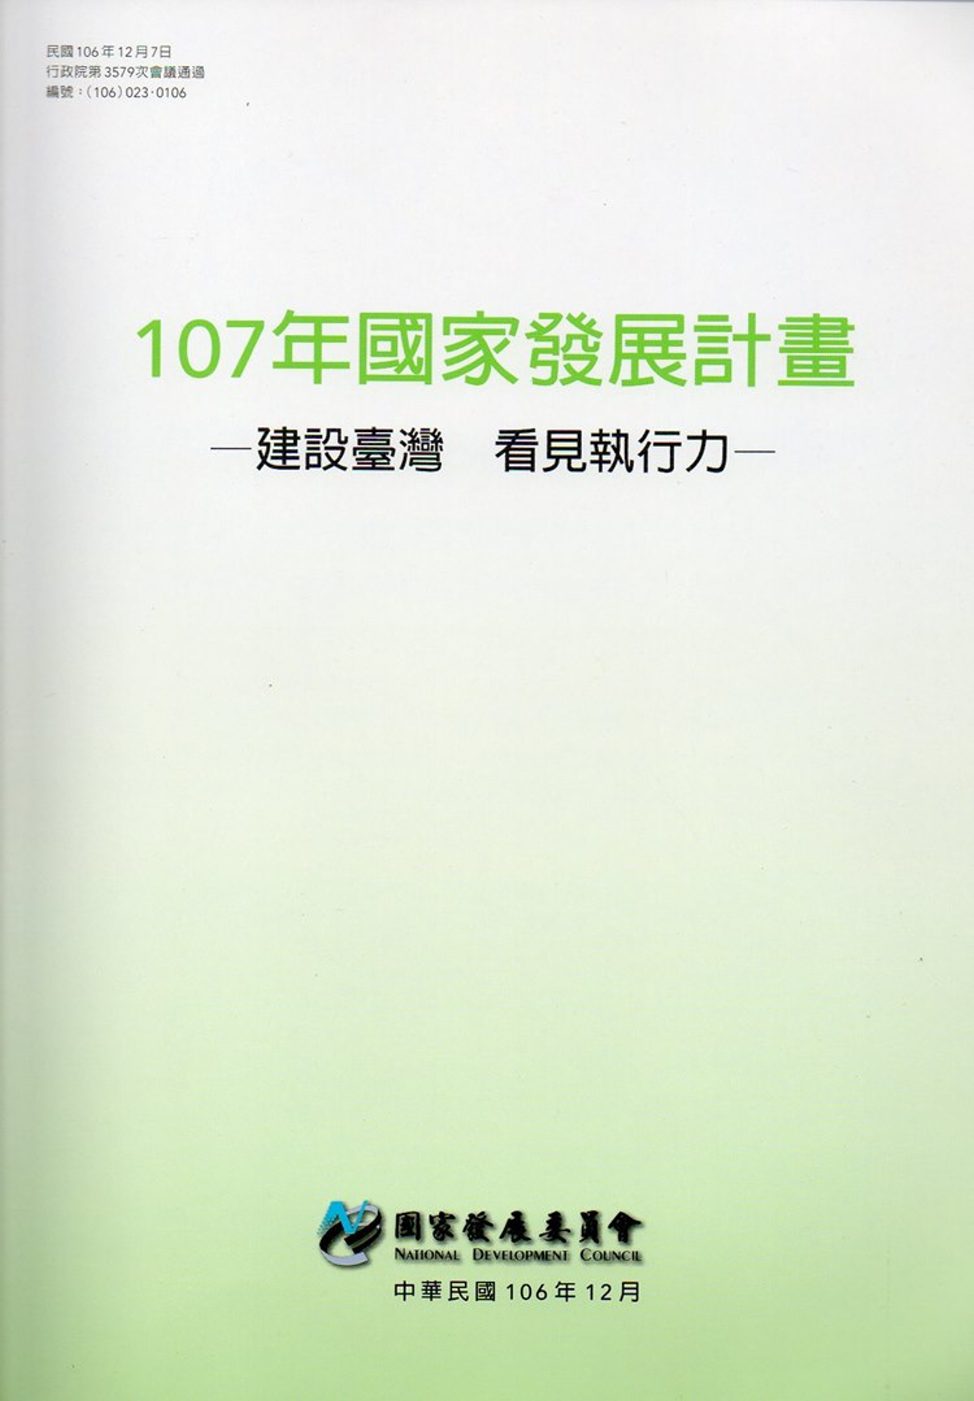 107年國家發展計畫：建設臺灣